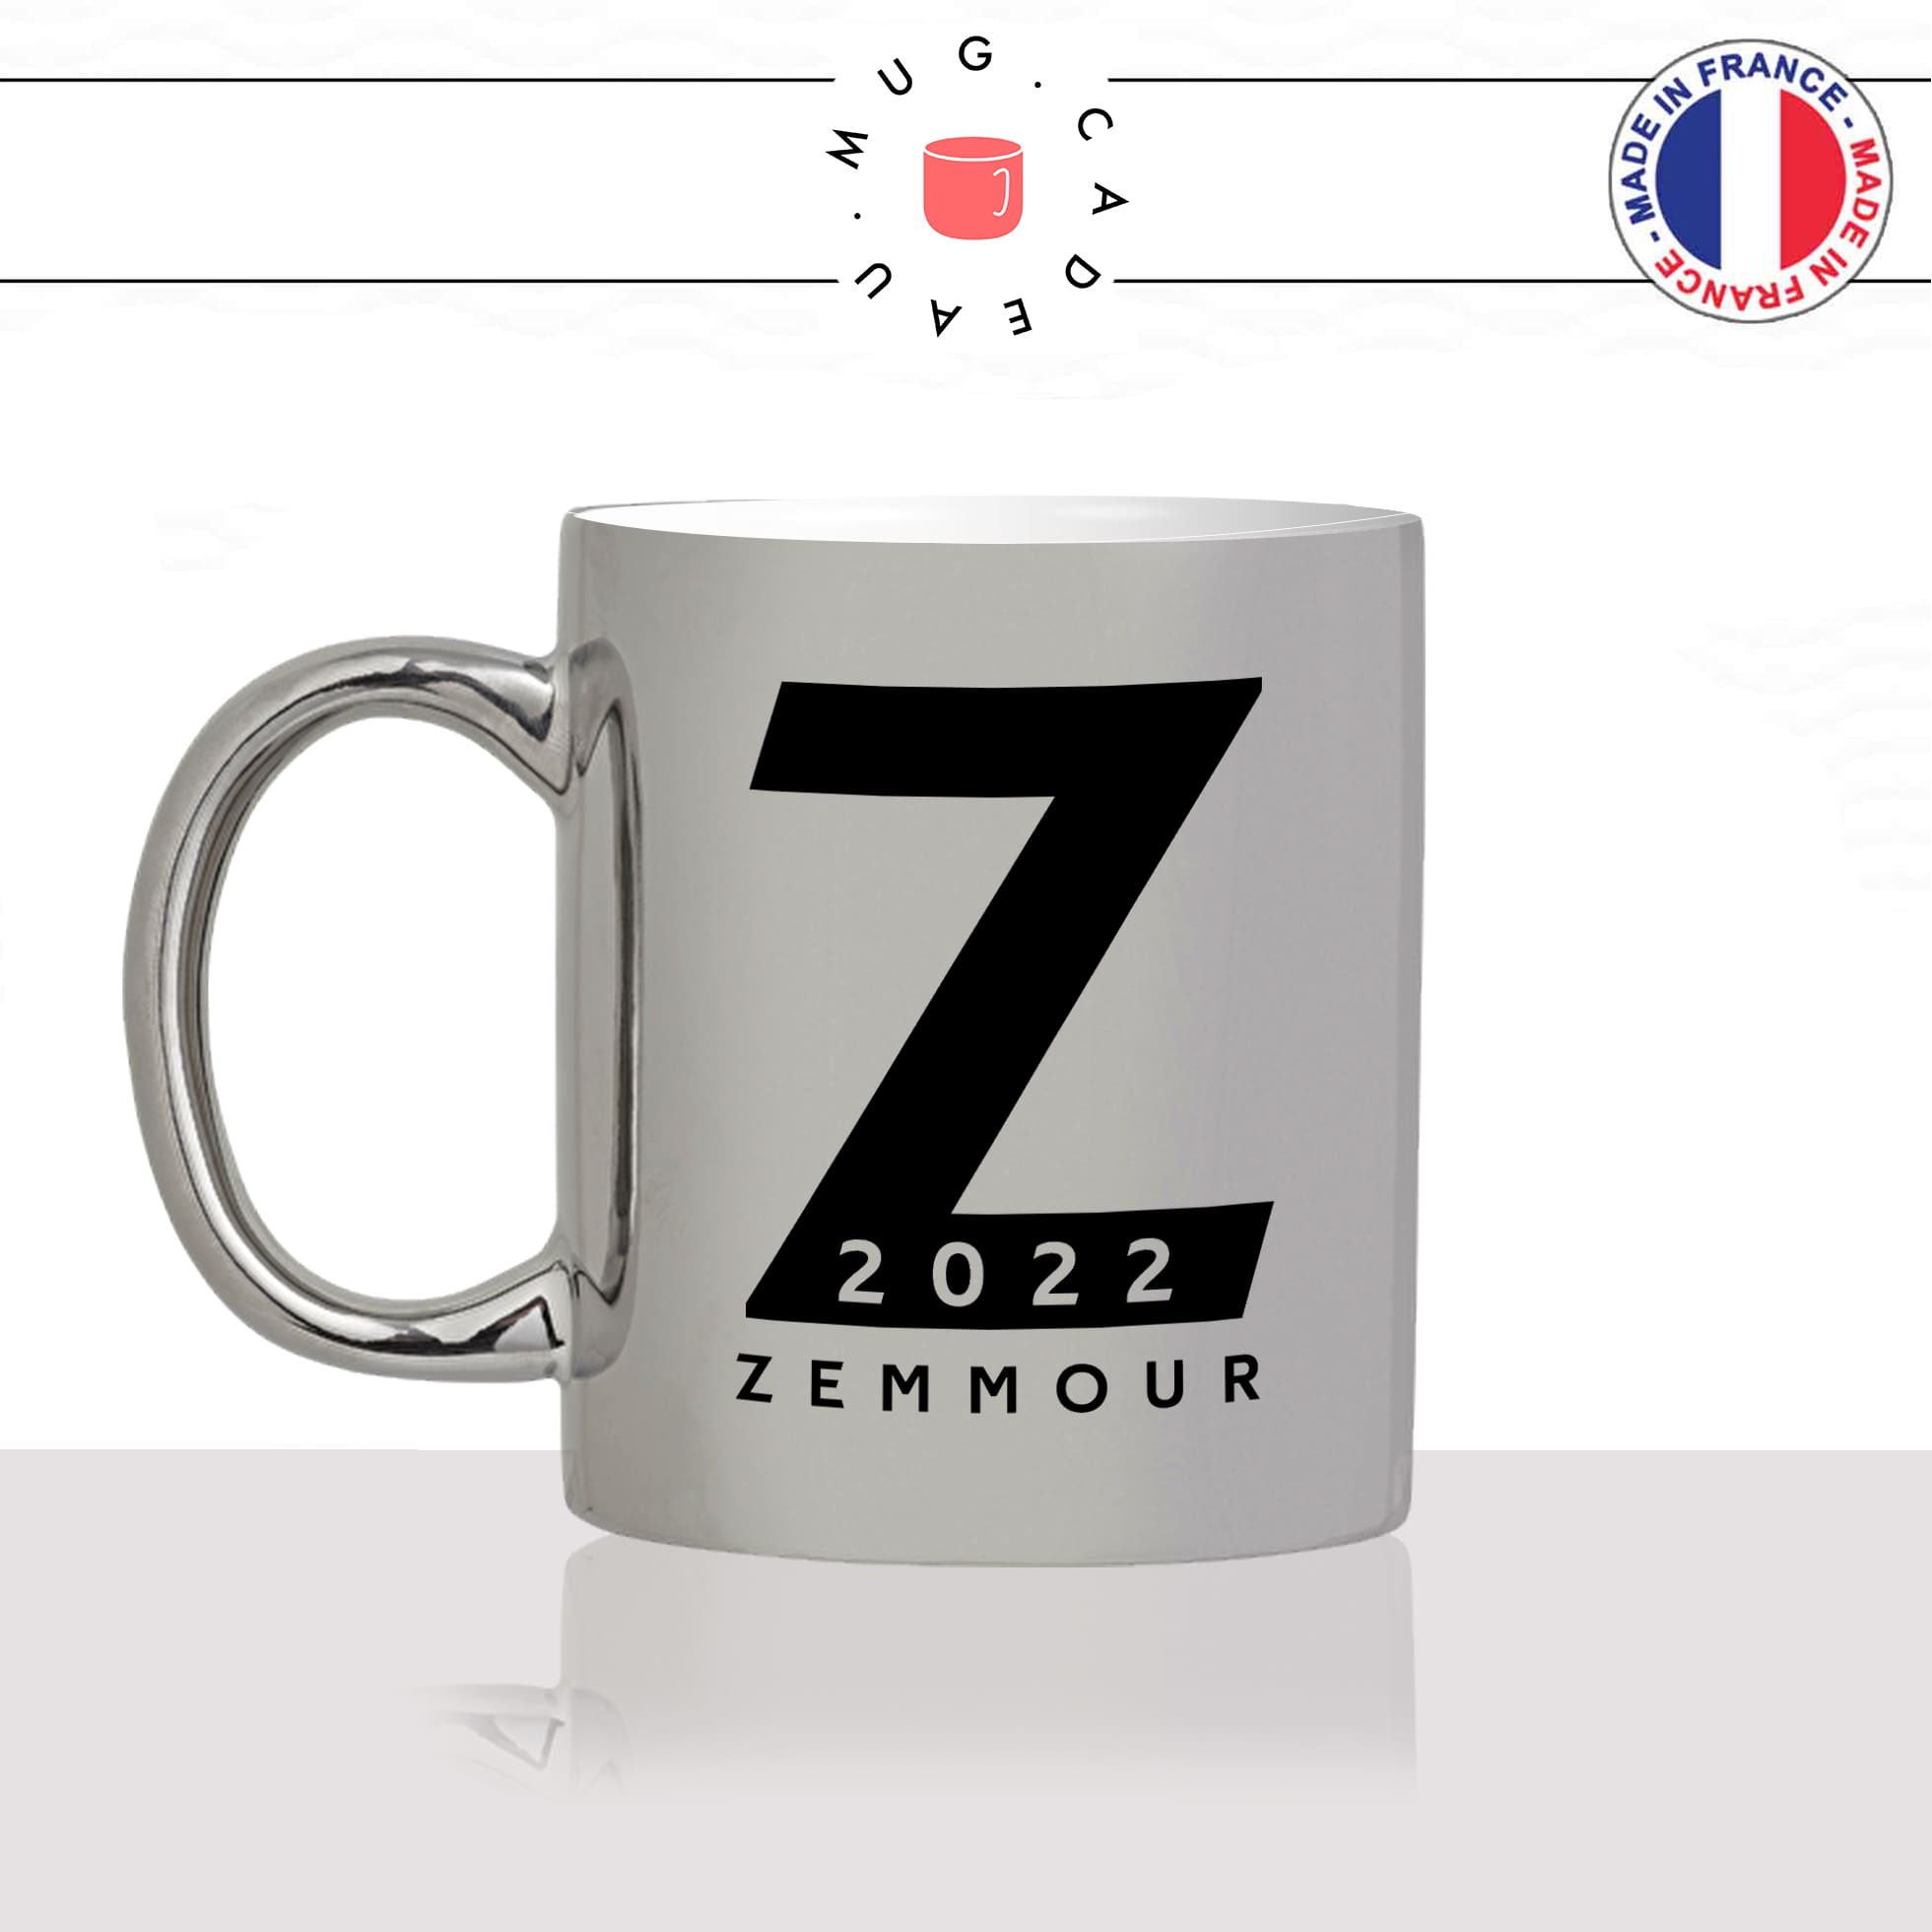 mug-tasse-argent-argenté-silver-gris-Z-zemmour-eric-2022-futur-president-campagne-presidentielle-candidat-elections-politique-idée-cadeau-original